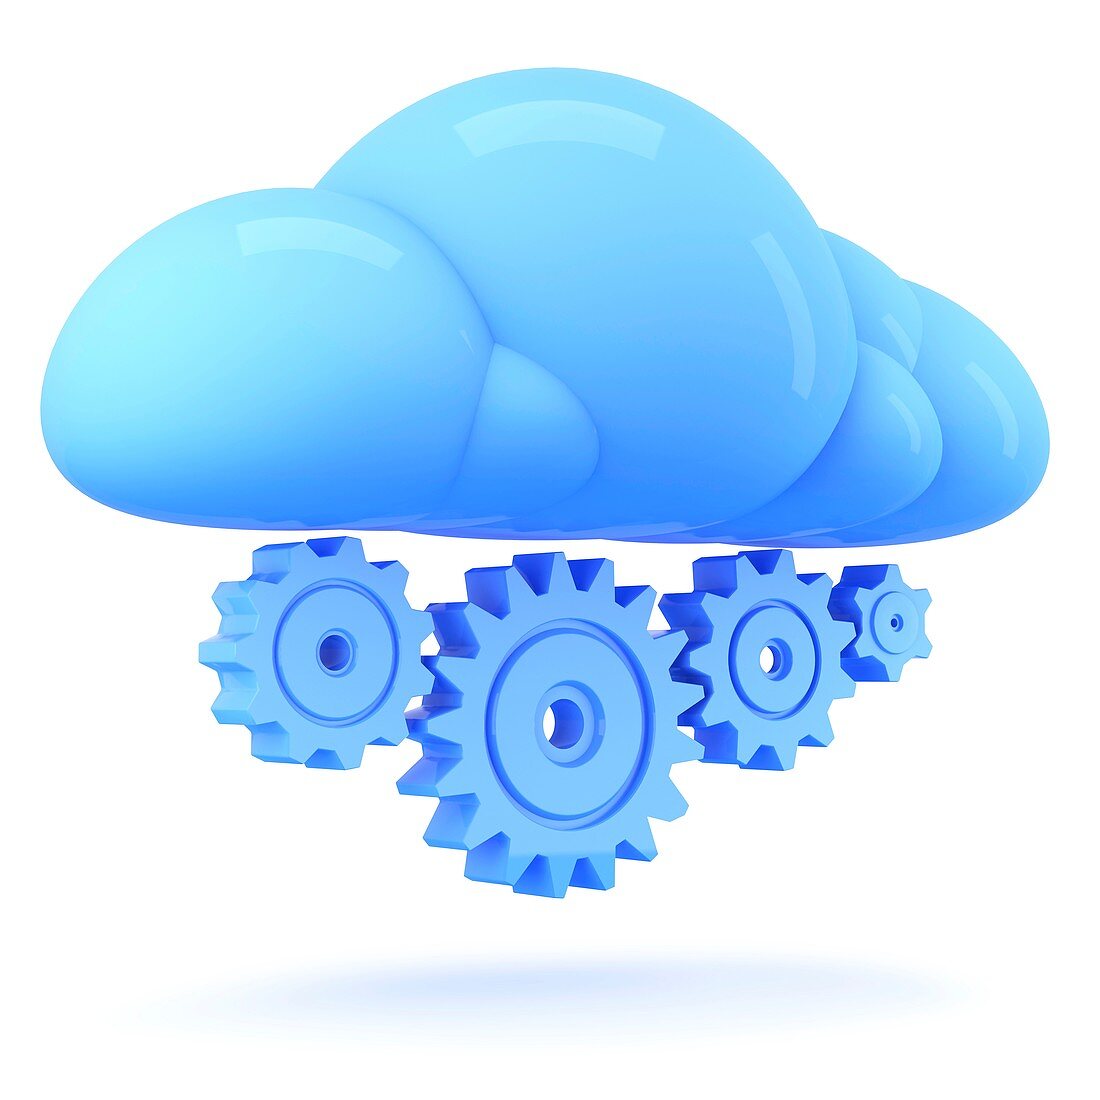 Cloud technology, conceptual illustration